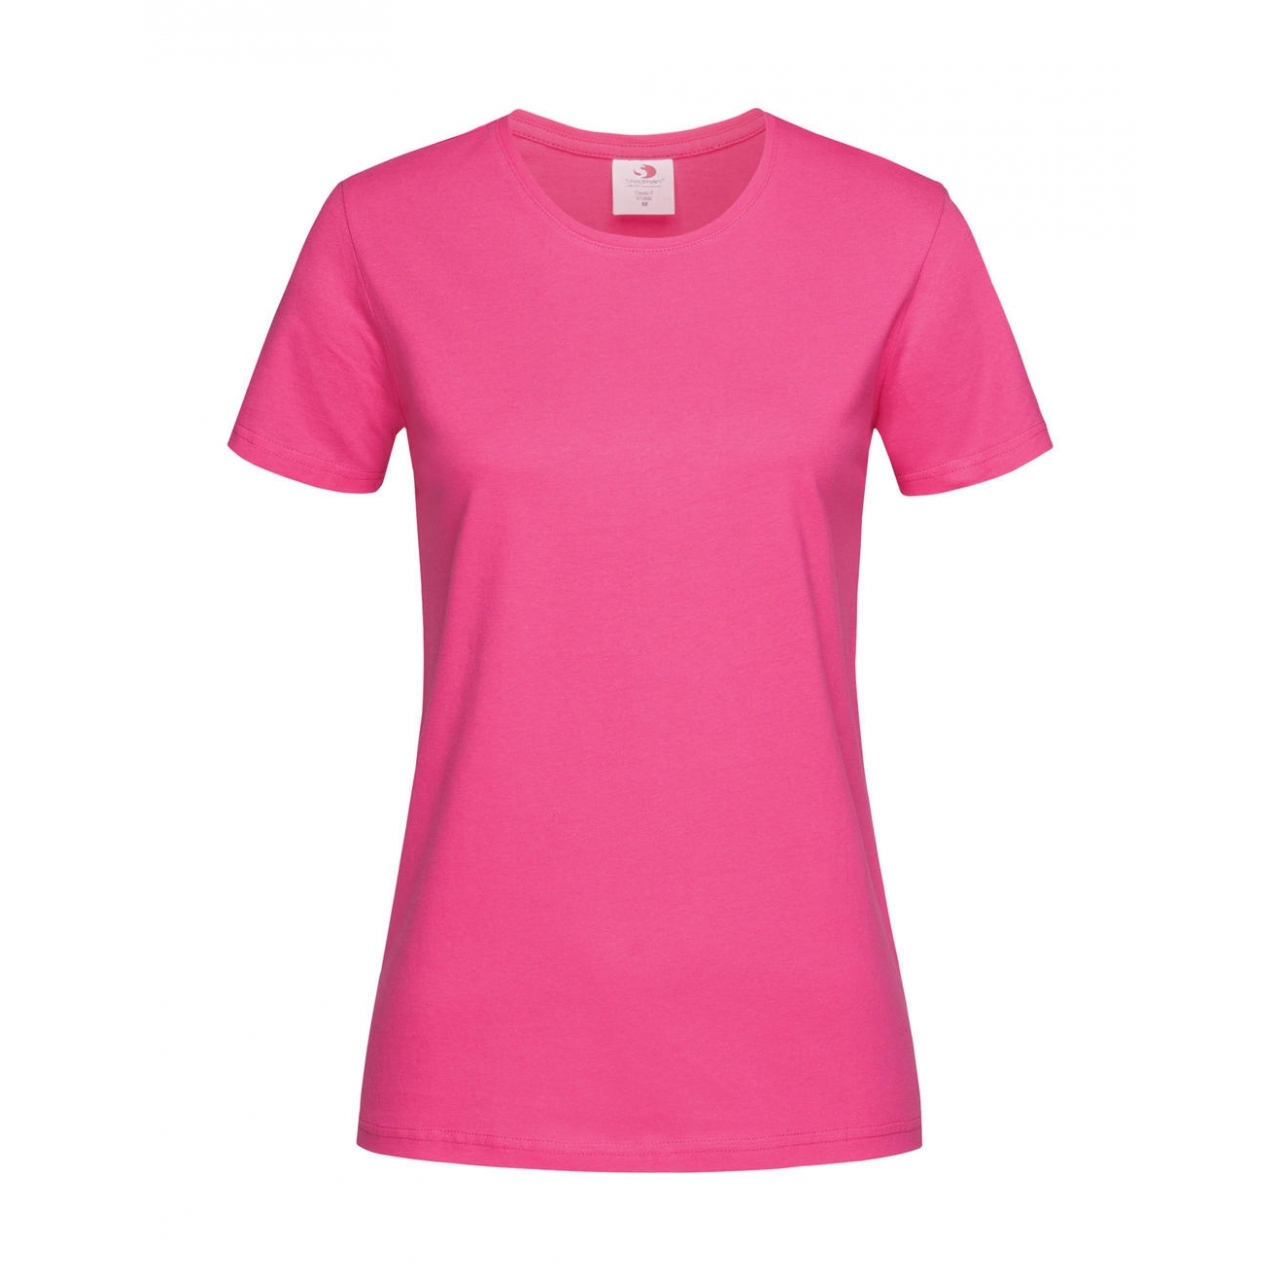 Tričko dámské Stedman Fitted s kulatým výstřihem - růžové, XL